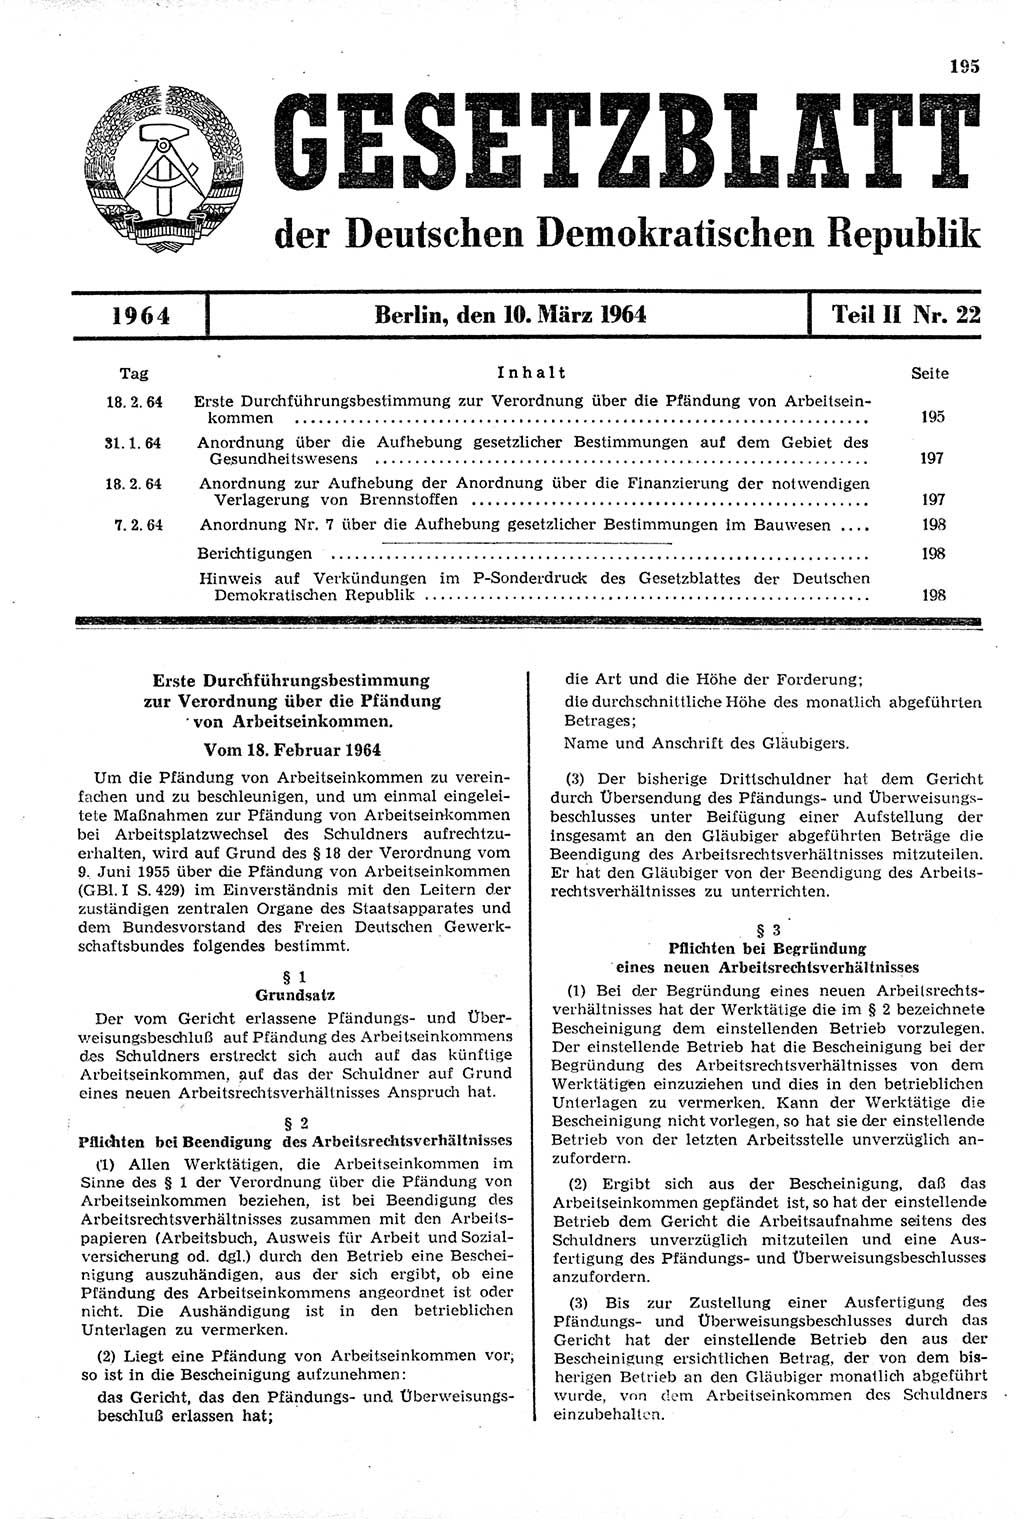 Gesetzblatt (GBl.) der Deutschen Demokratischen Republik (DDR) Teil ⅠⅠ 1964, Seite 195 (GBl. DDR ⅠⅠ 1964, S. 195)